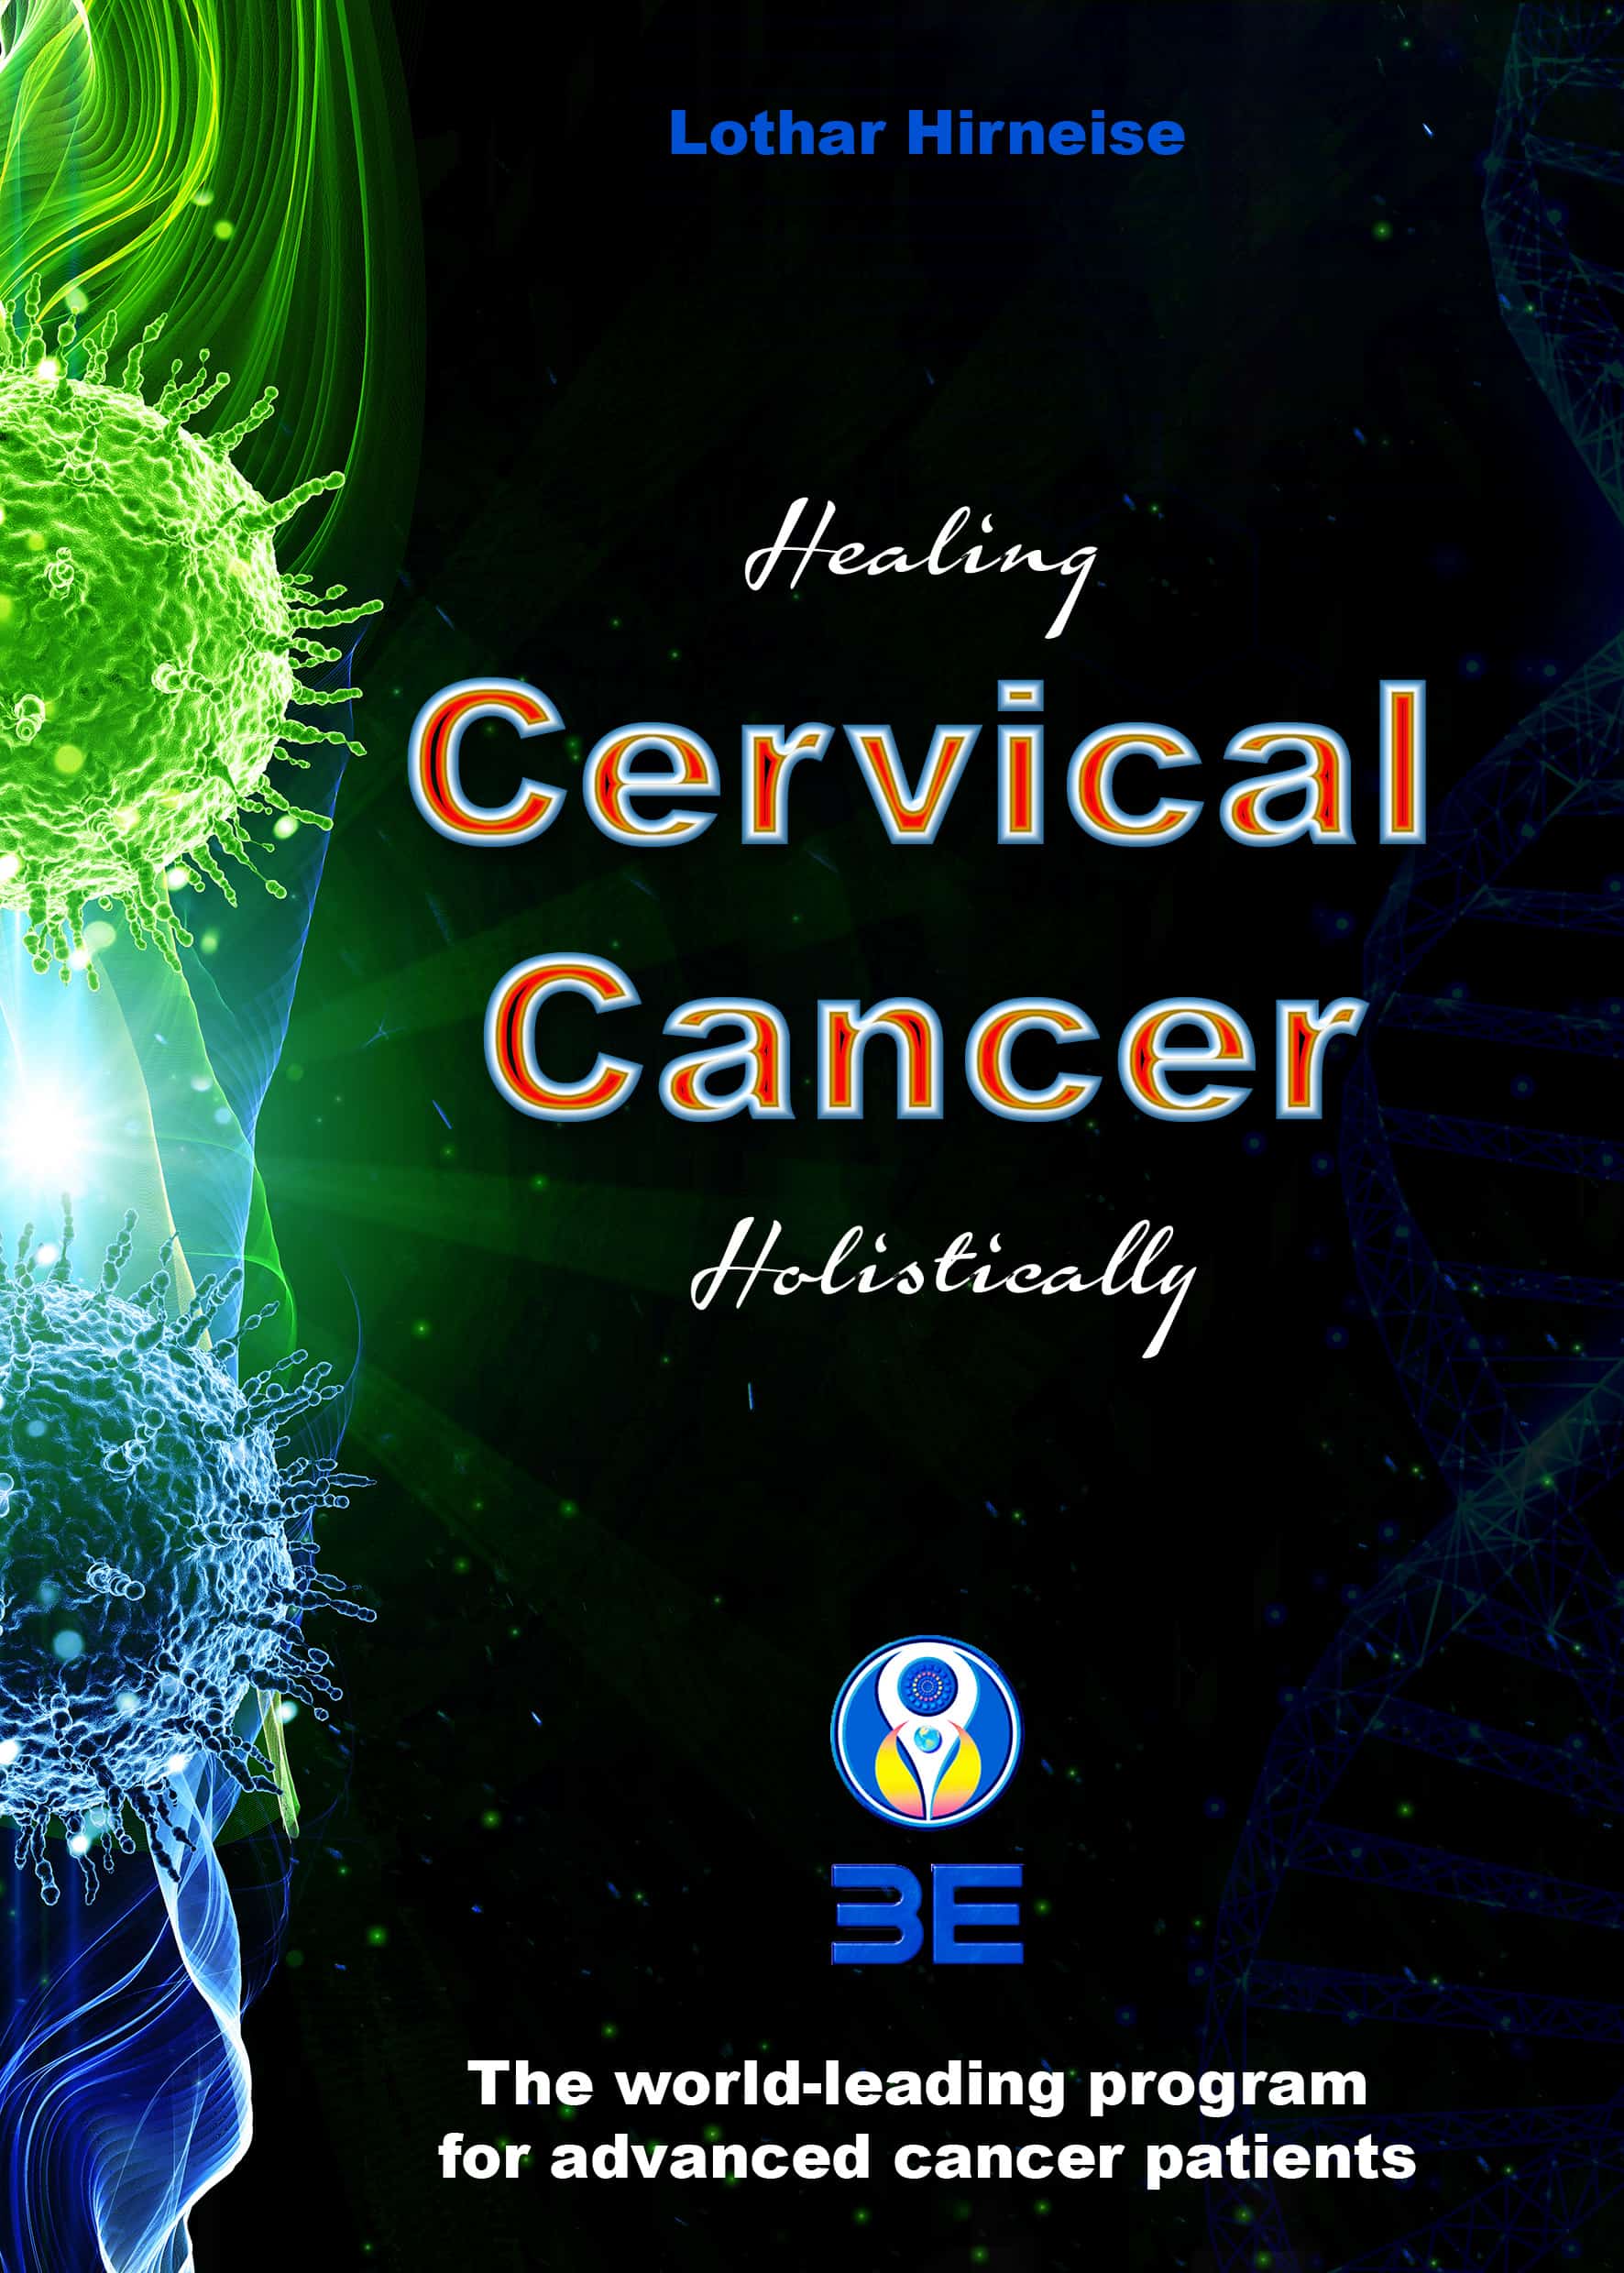 Cervical cancer 